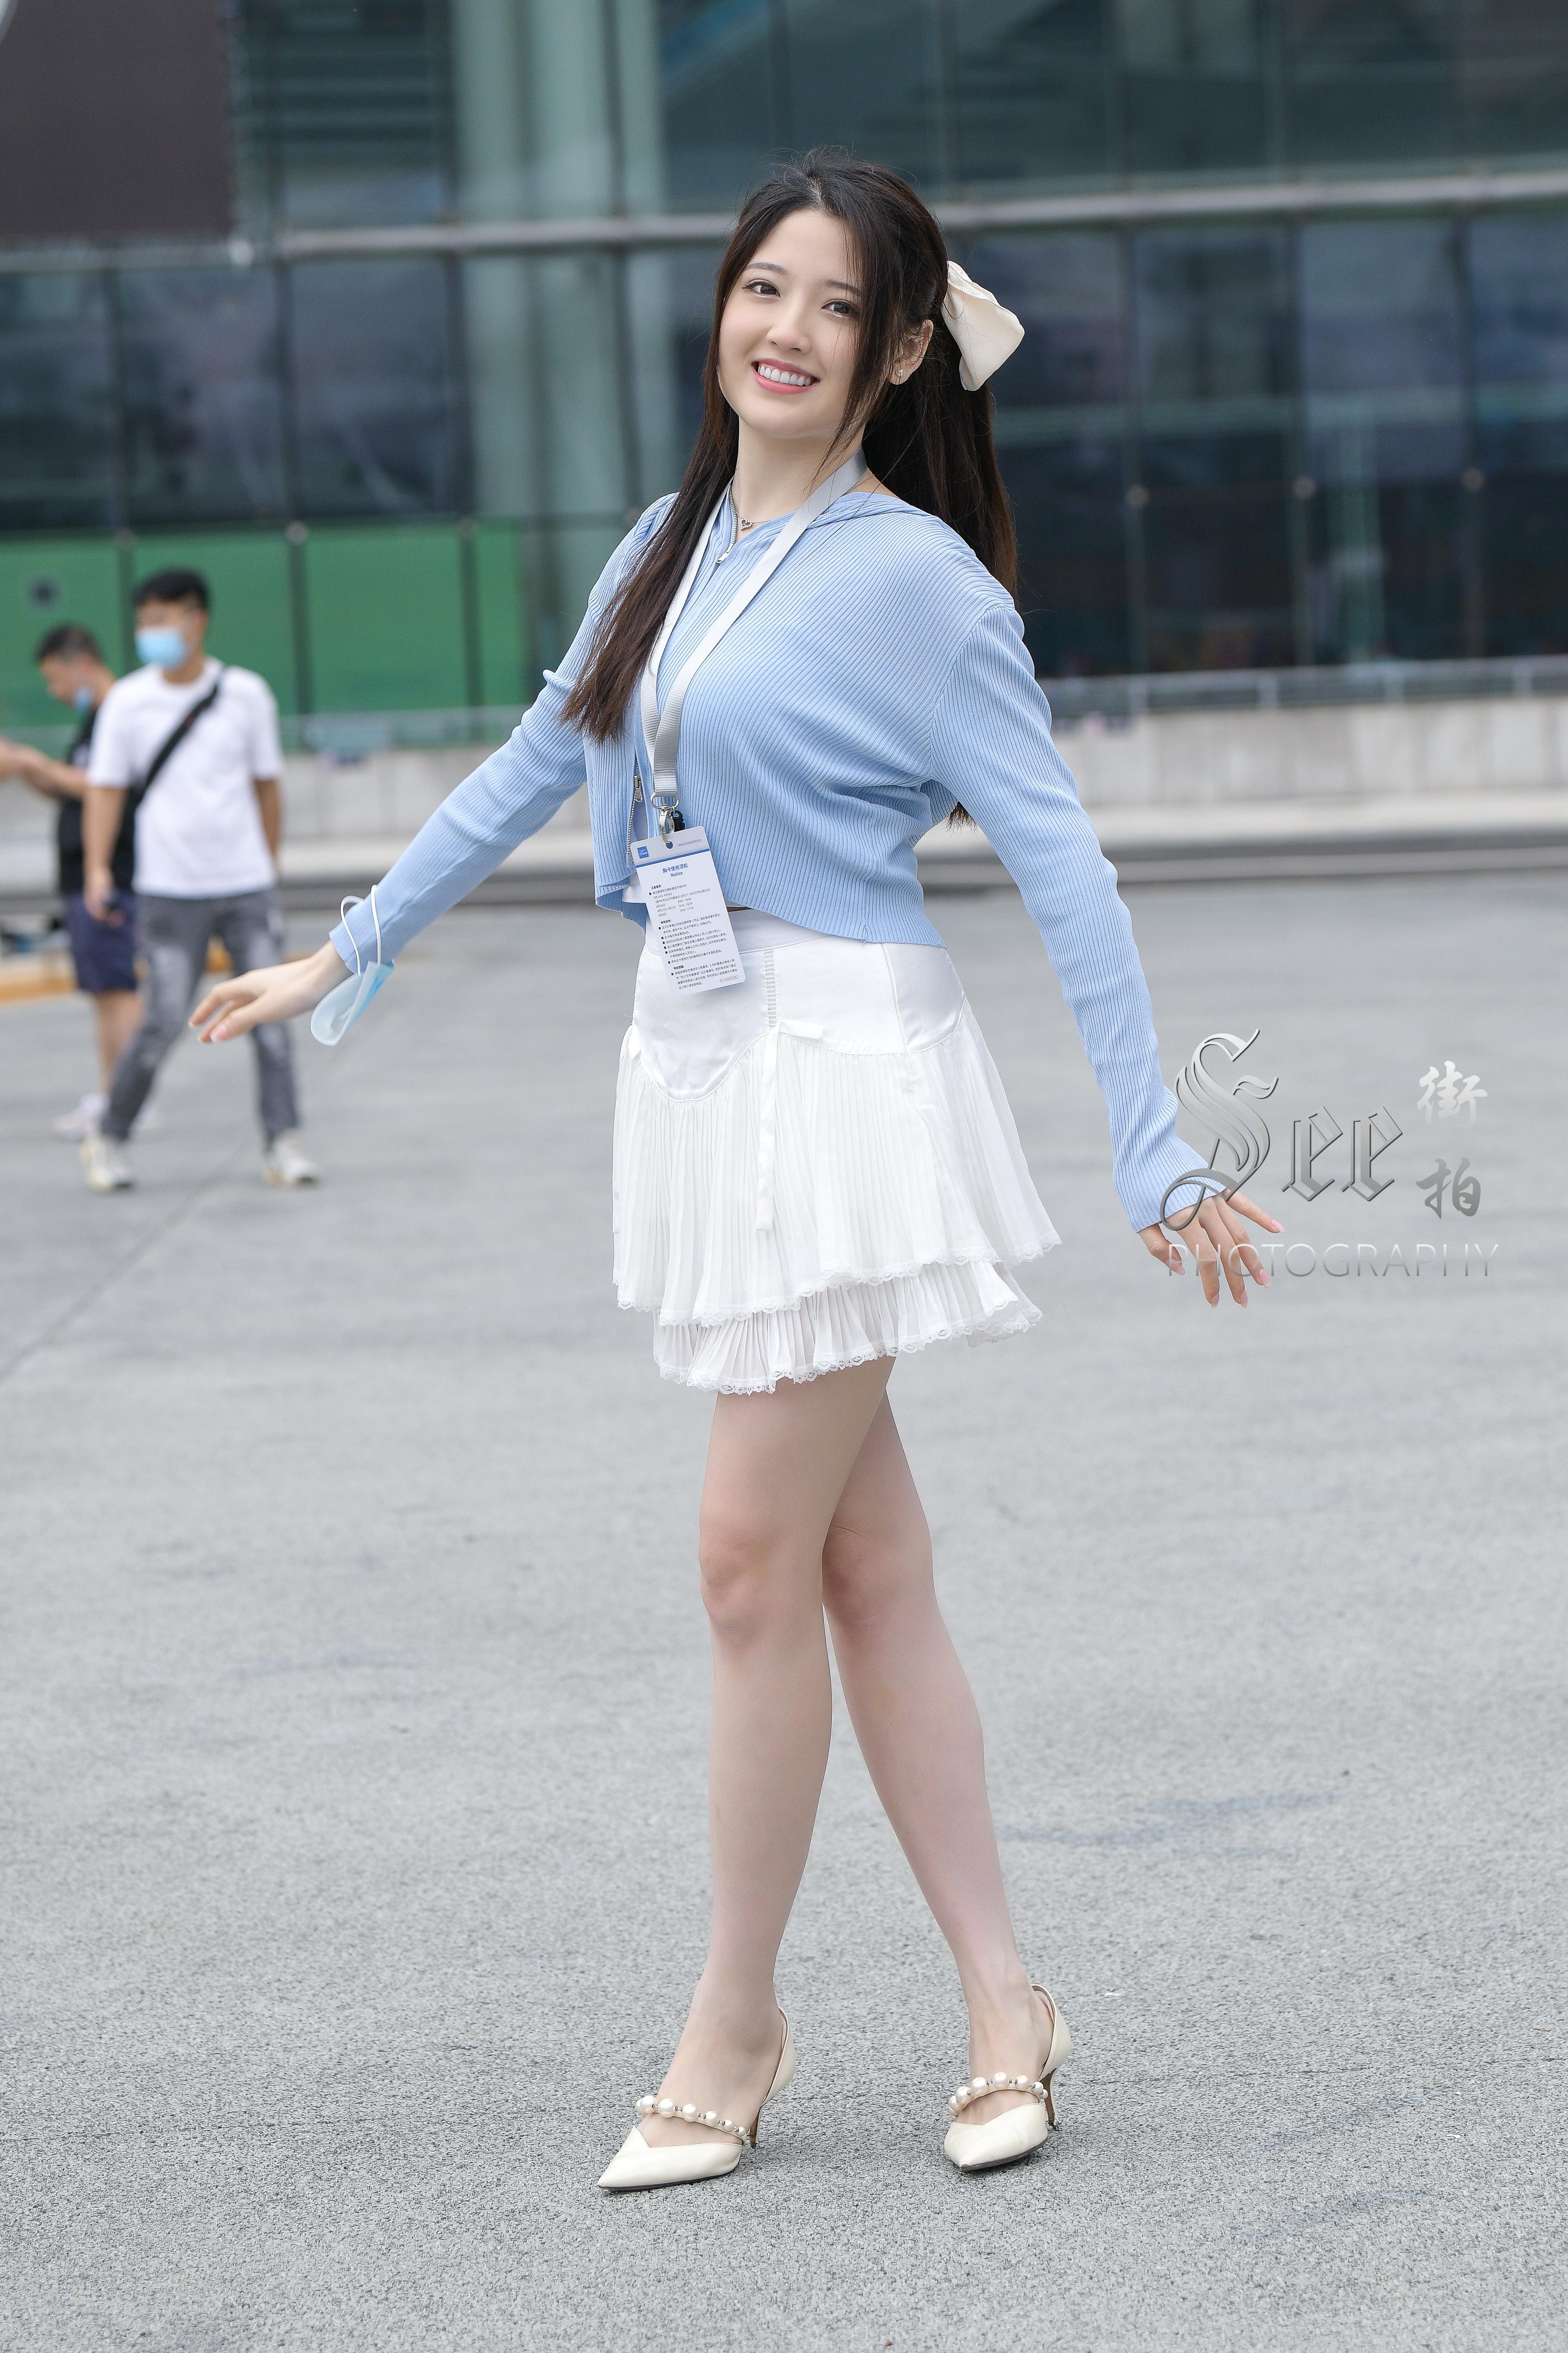 SEE街拍 展会前的阳光少女 蓝色外套加白色短裙清甜可爱美丽,1 (5)